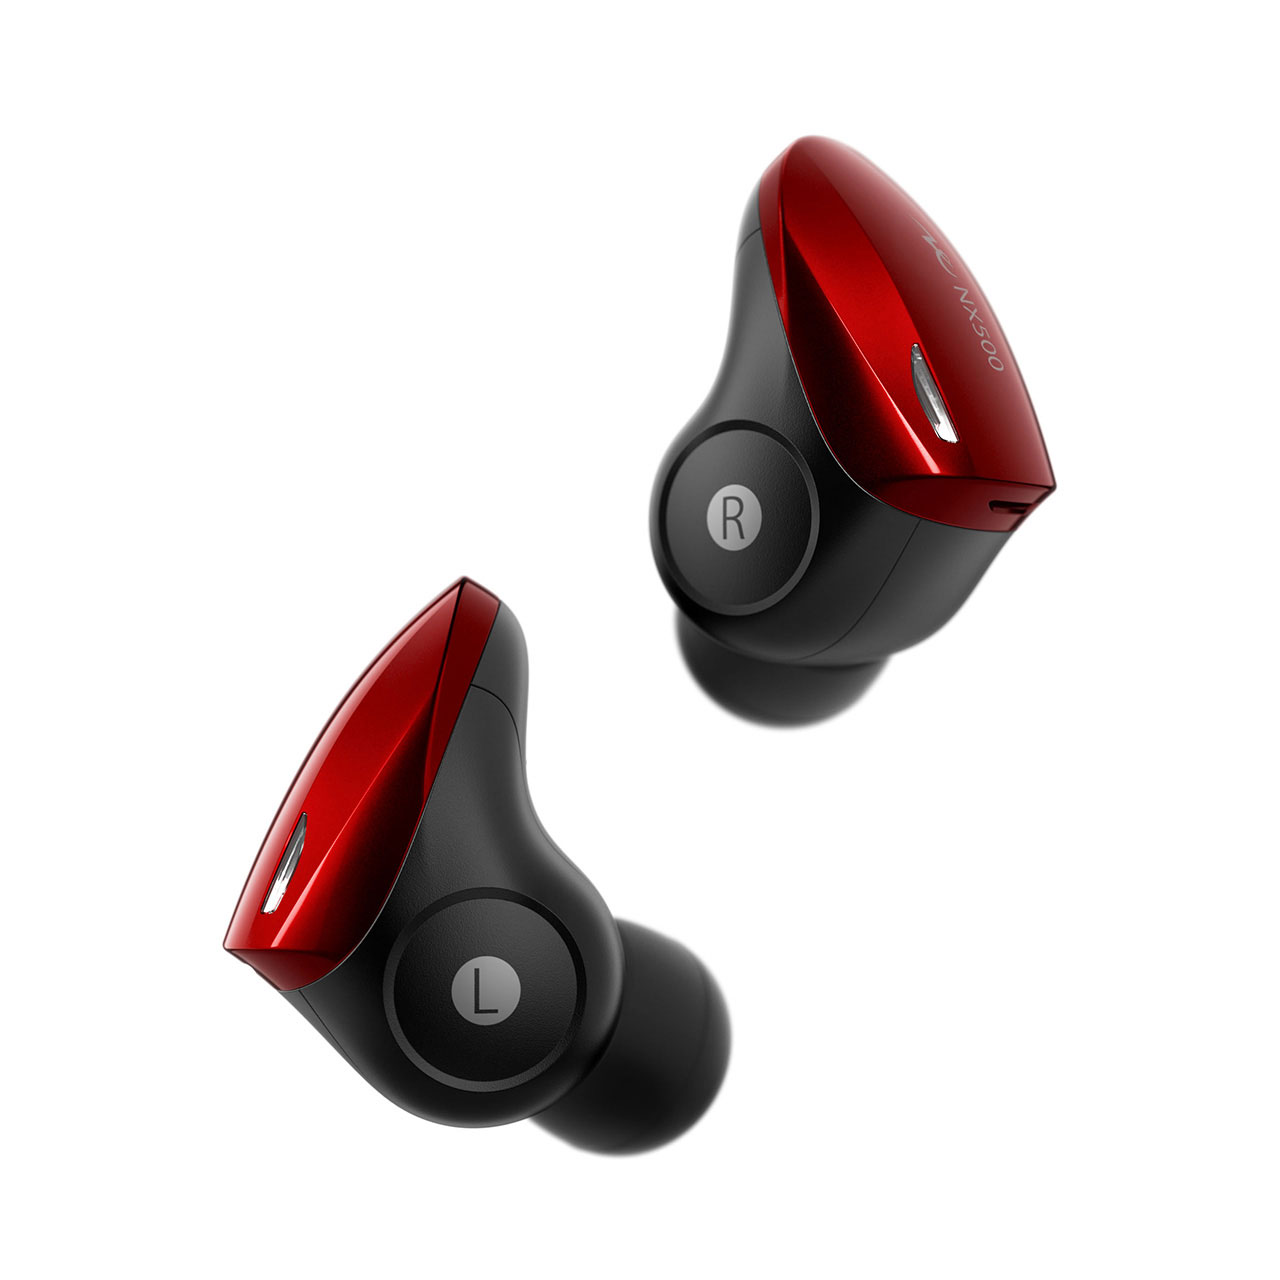 Bluetoothイヤホンで音飛びが起こる原因と対策法 Radius ラディウス株式会社 オーディオ デジタル音響機器 Lightning製品メーカー